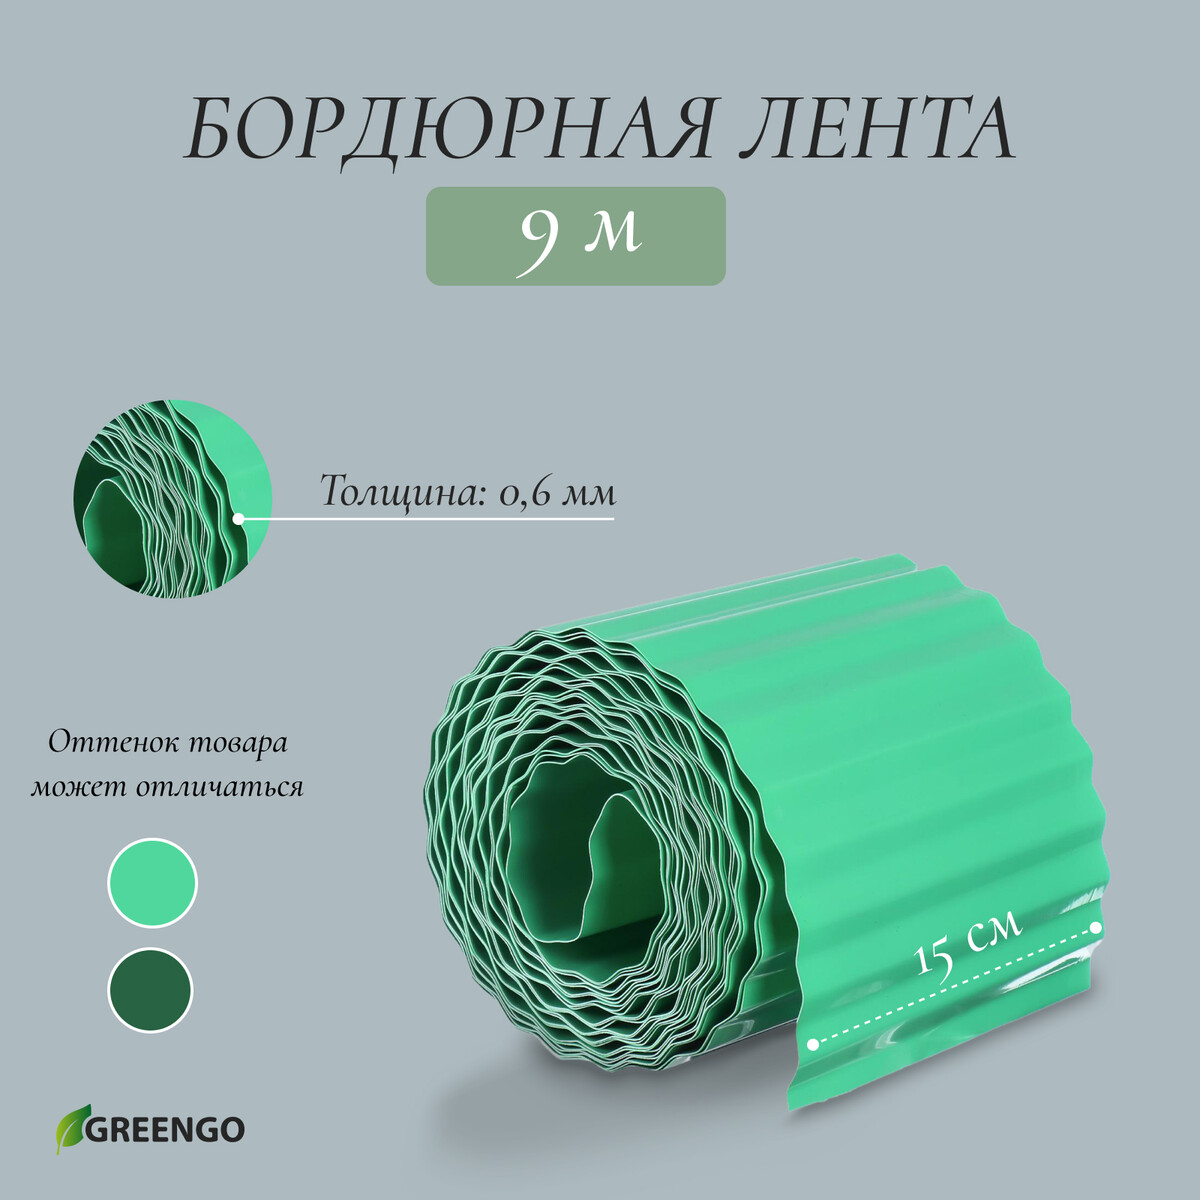 Лента бордюрная, 0.15 × 9 м, толщина 0.6 мм, пластиковая, гофра, зеленая, greengo